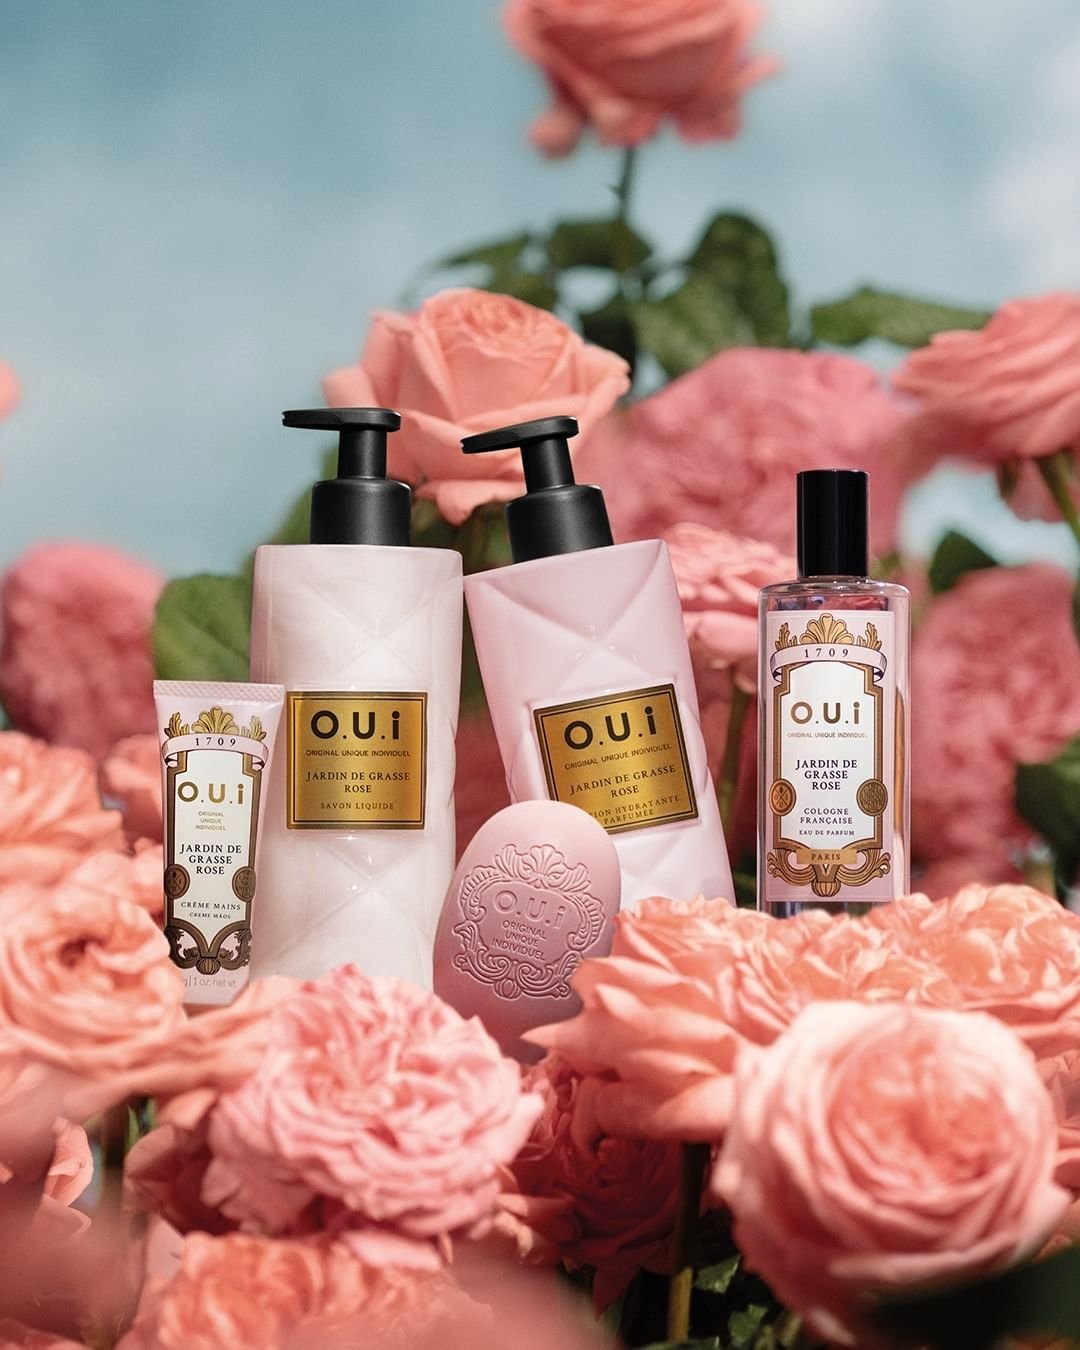 O.U.i Paris - perfume-feminino - lançamentos de beleza - verão - brasil - https://stealthelook.com.br